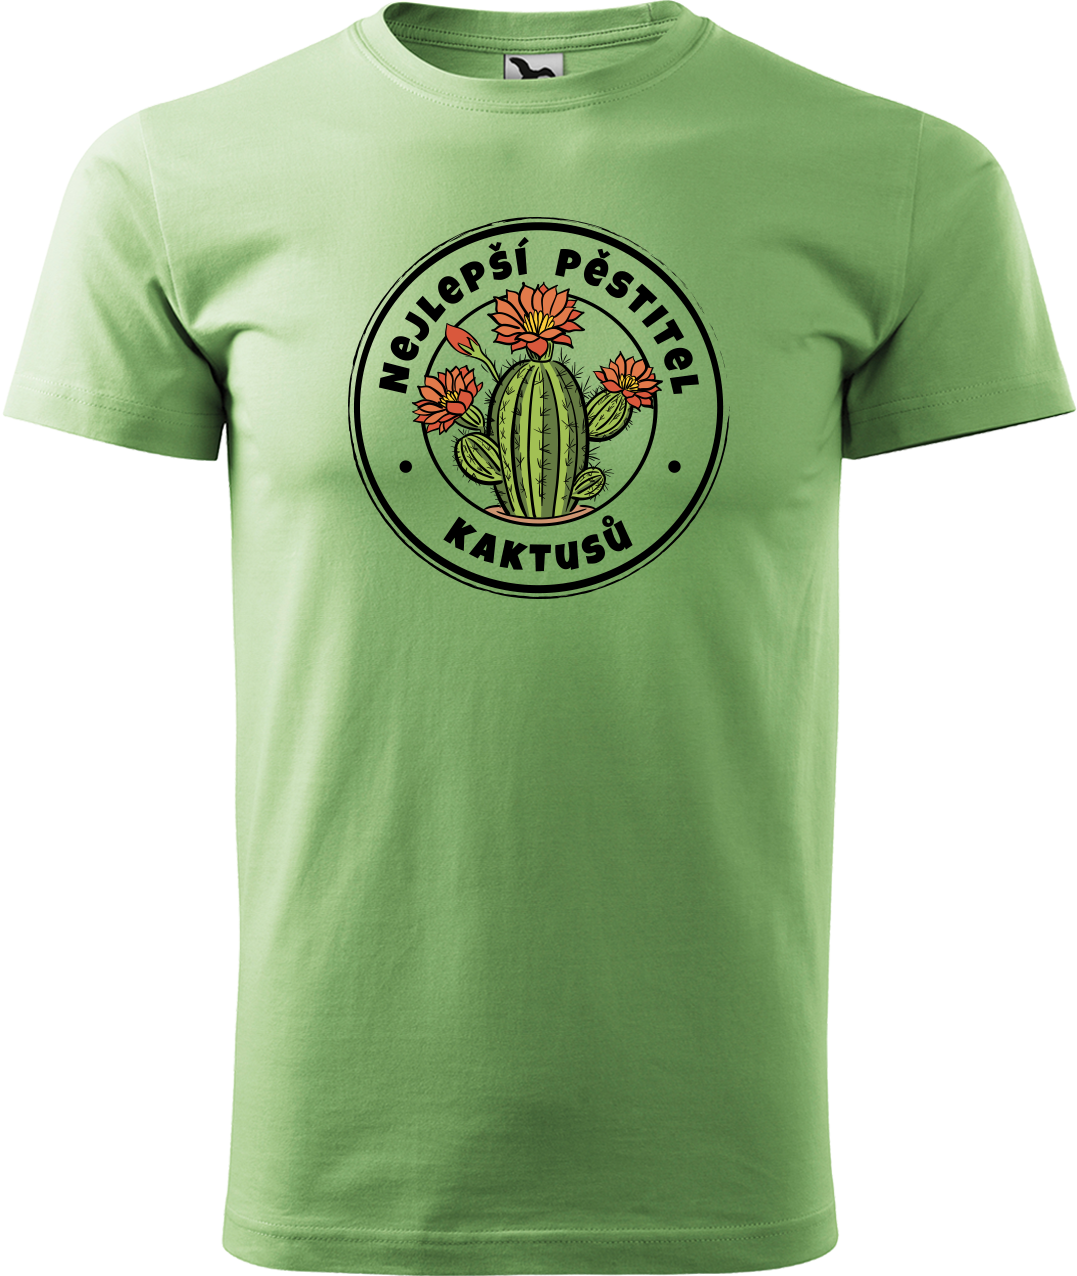 Tričko s kaktusem - Nejlepší pěstitel kaktusů Velikost: M, Barva: Trávově zelená (39)